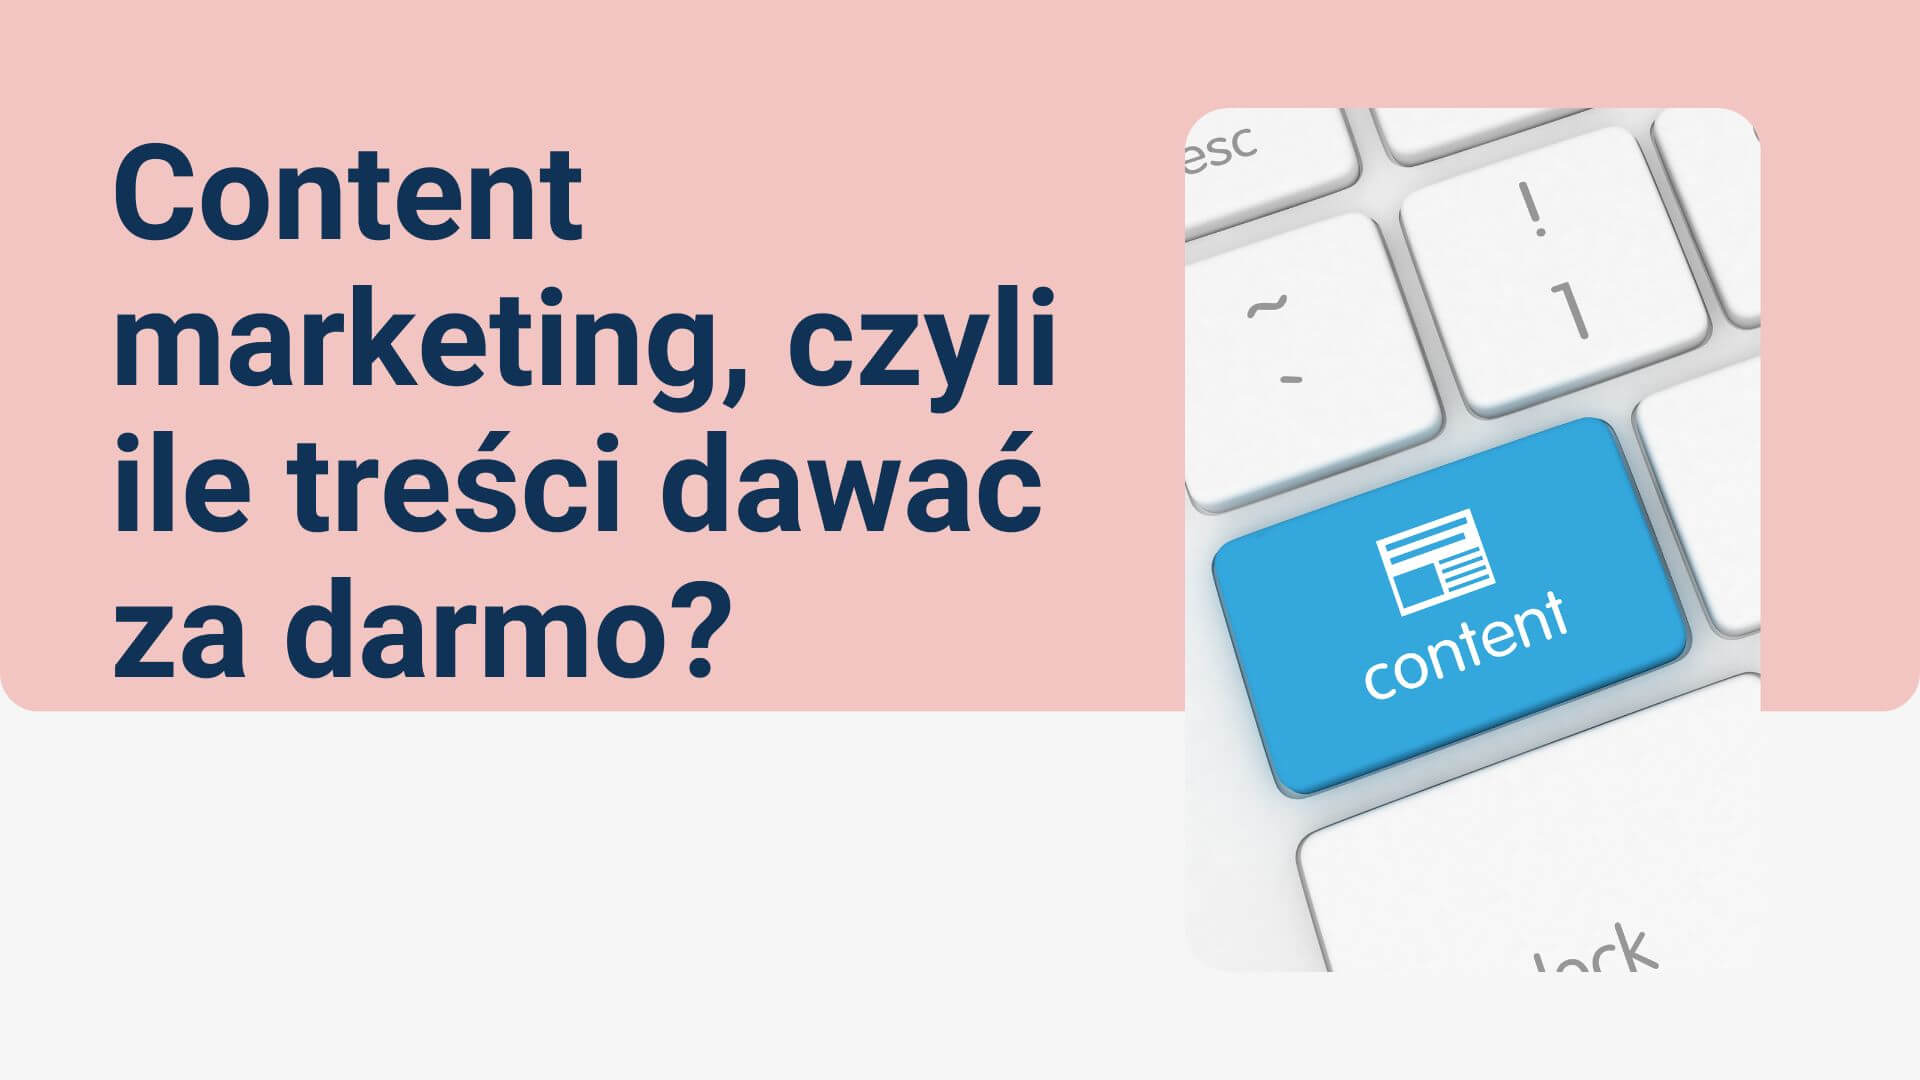 You are currently viewing Content marketing, czyli ile treści dawać za darmo?